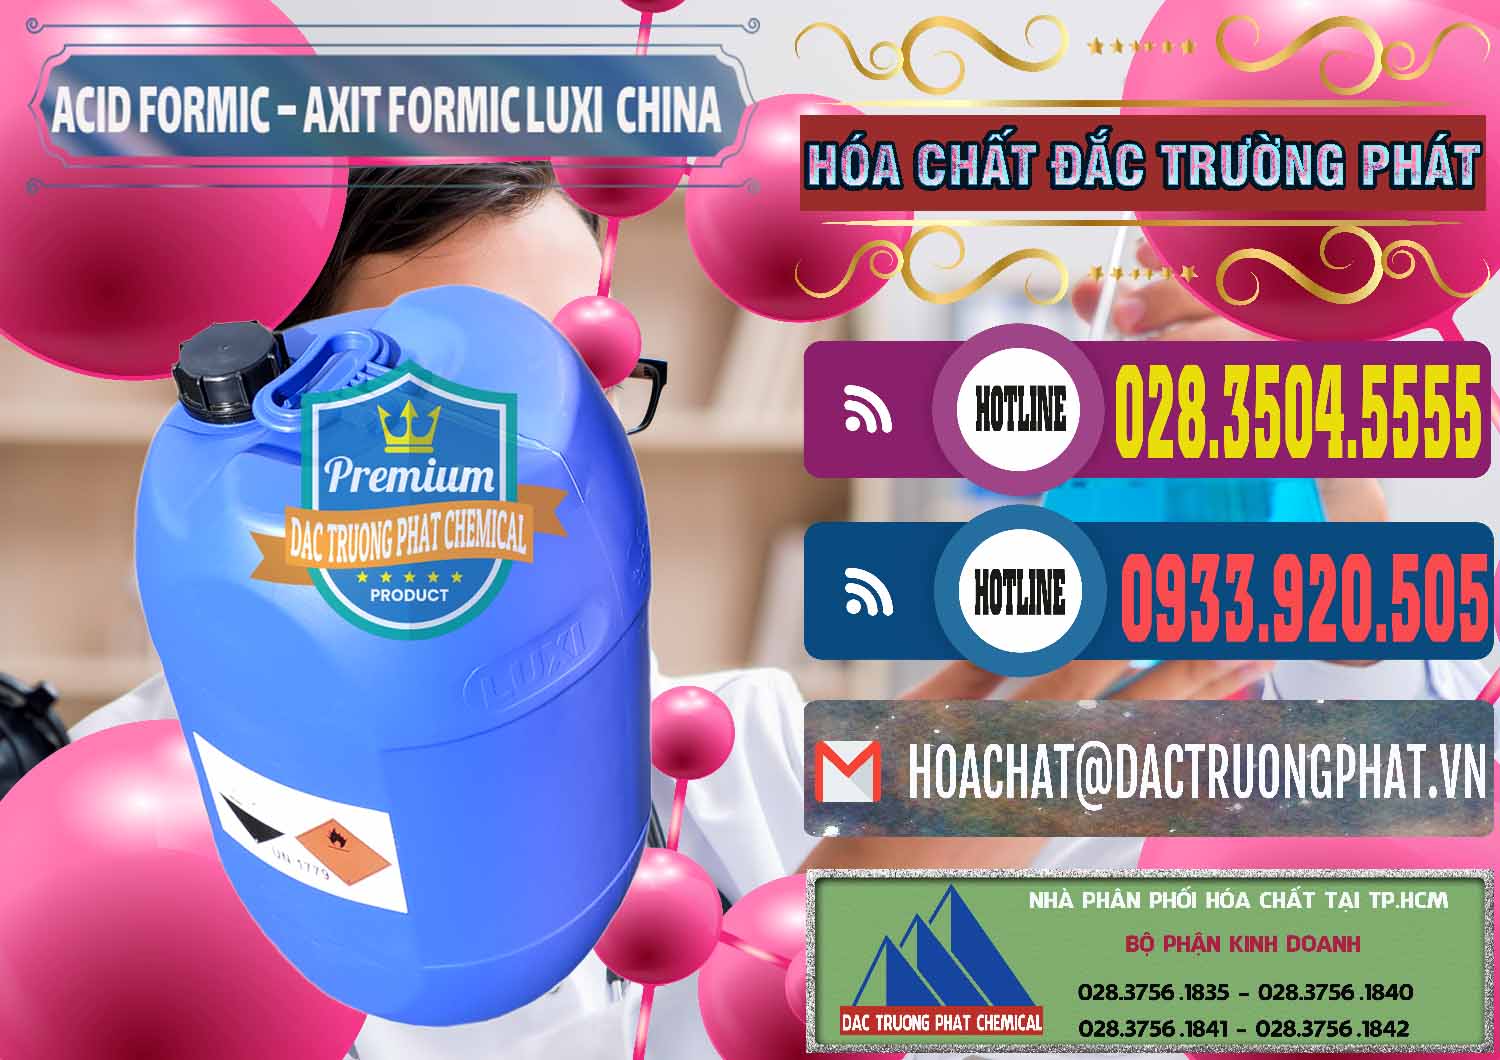 Cty chuyên bán và cung cấp Acid Formic - Axit Formic Luxi Trung Quốc China - 0029 - Nơi cung cấp _ kinh doanh hóa chất tại TP.HCM - muabanhoachat.com.vn